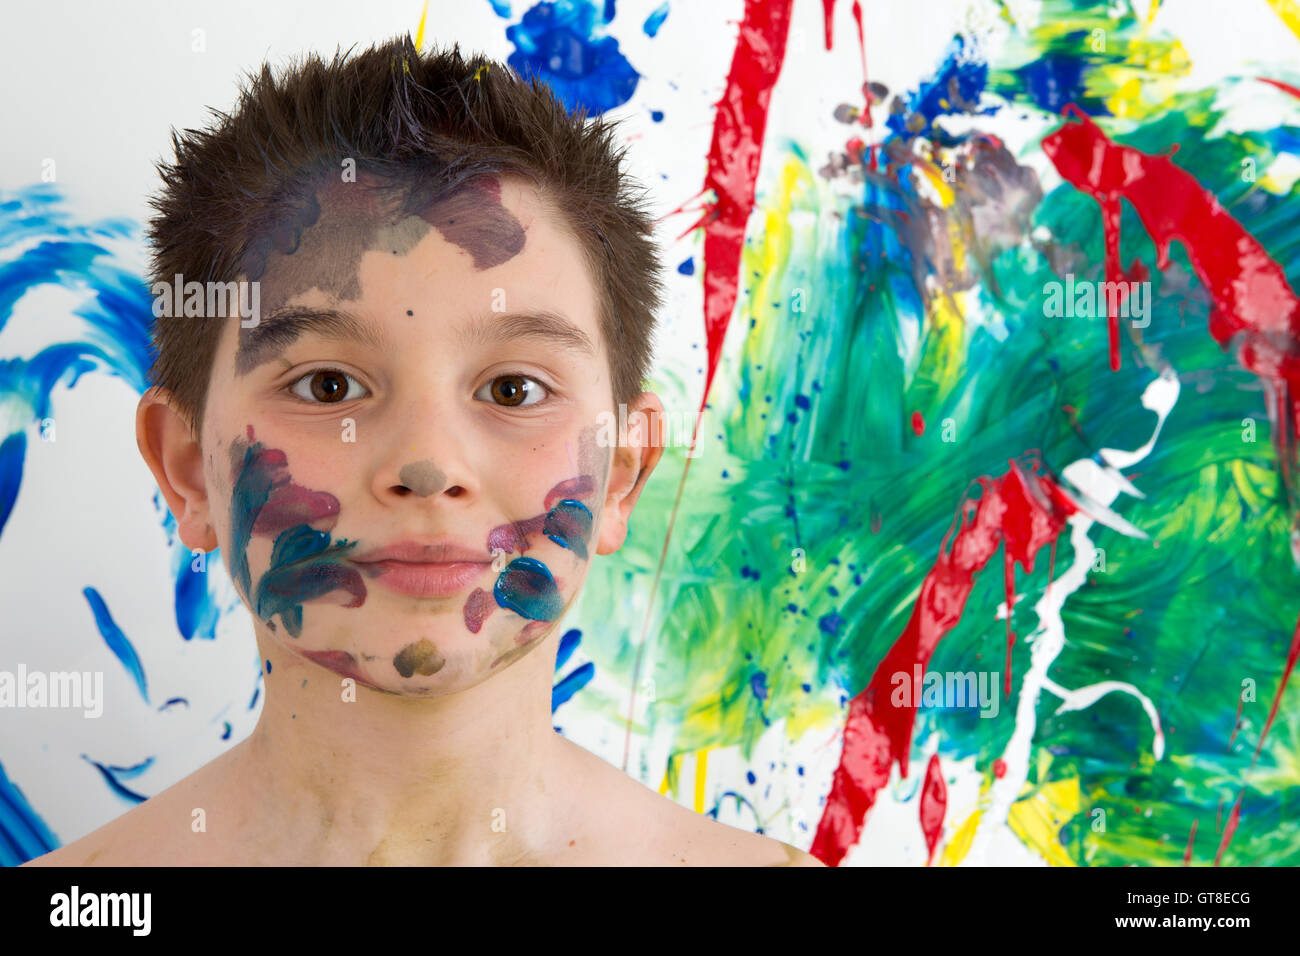 Hübscher Junge mit bunten Farben überall auf seinem Gesicht stand vor seiner neuen moderne abstrakte Kunstwerke mit einem Blen beschmiert Stockfoto